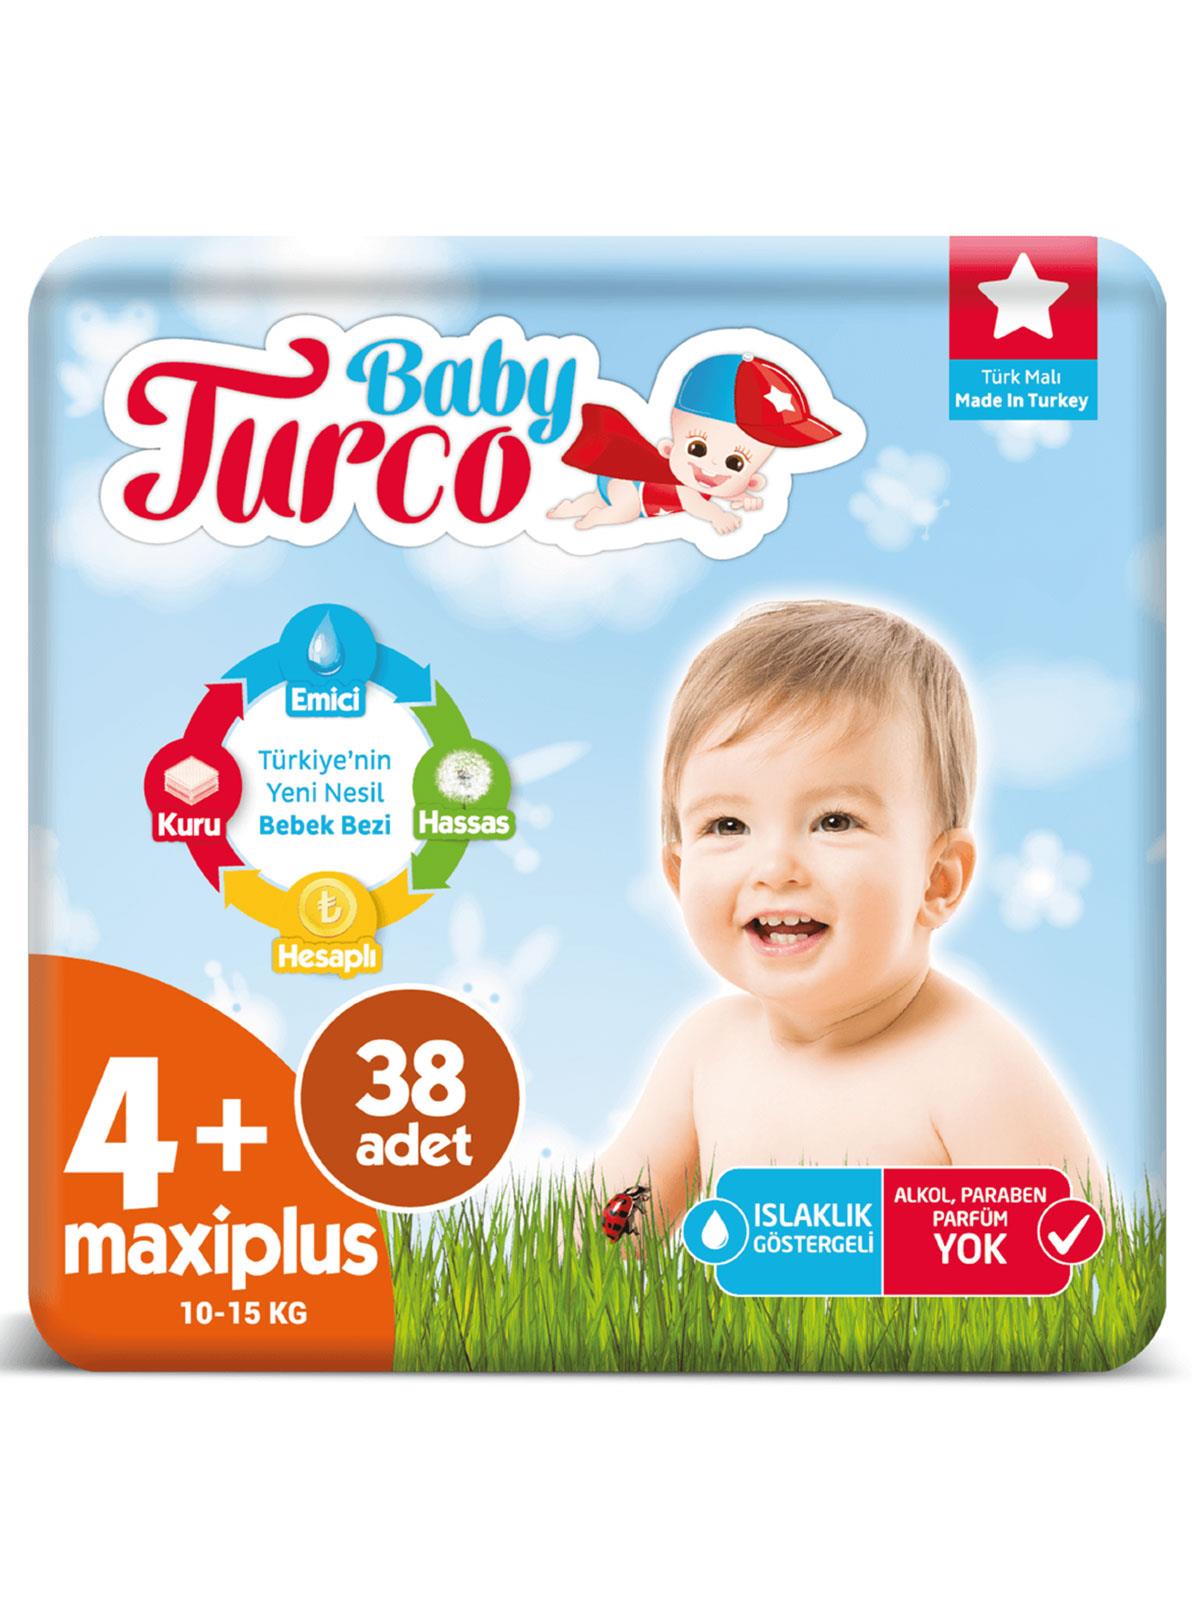 Baby Turco Bebek Bezi 4 Beden Maxiplus 38 Adet